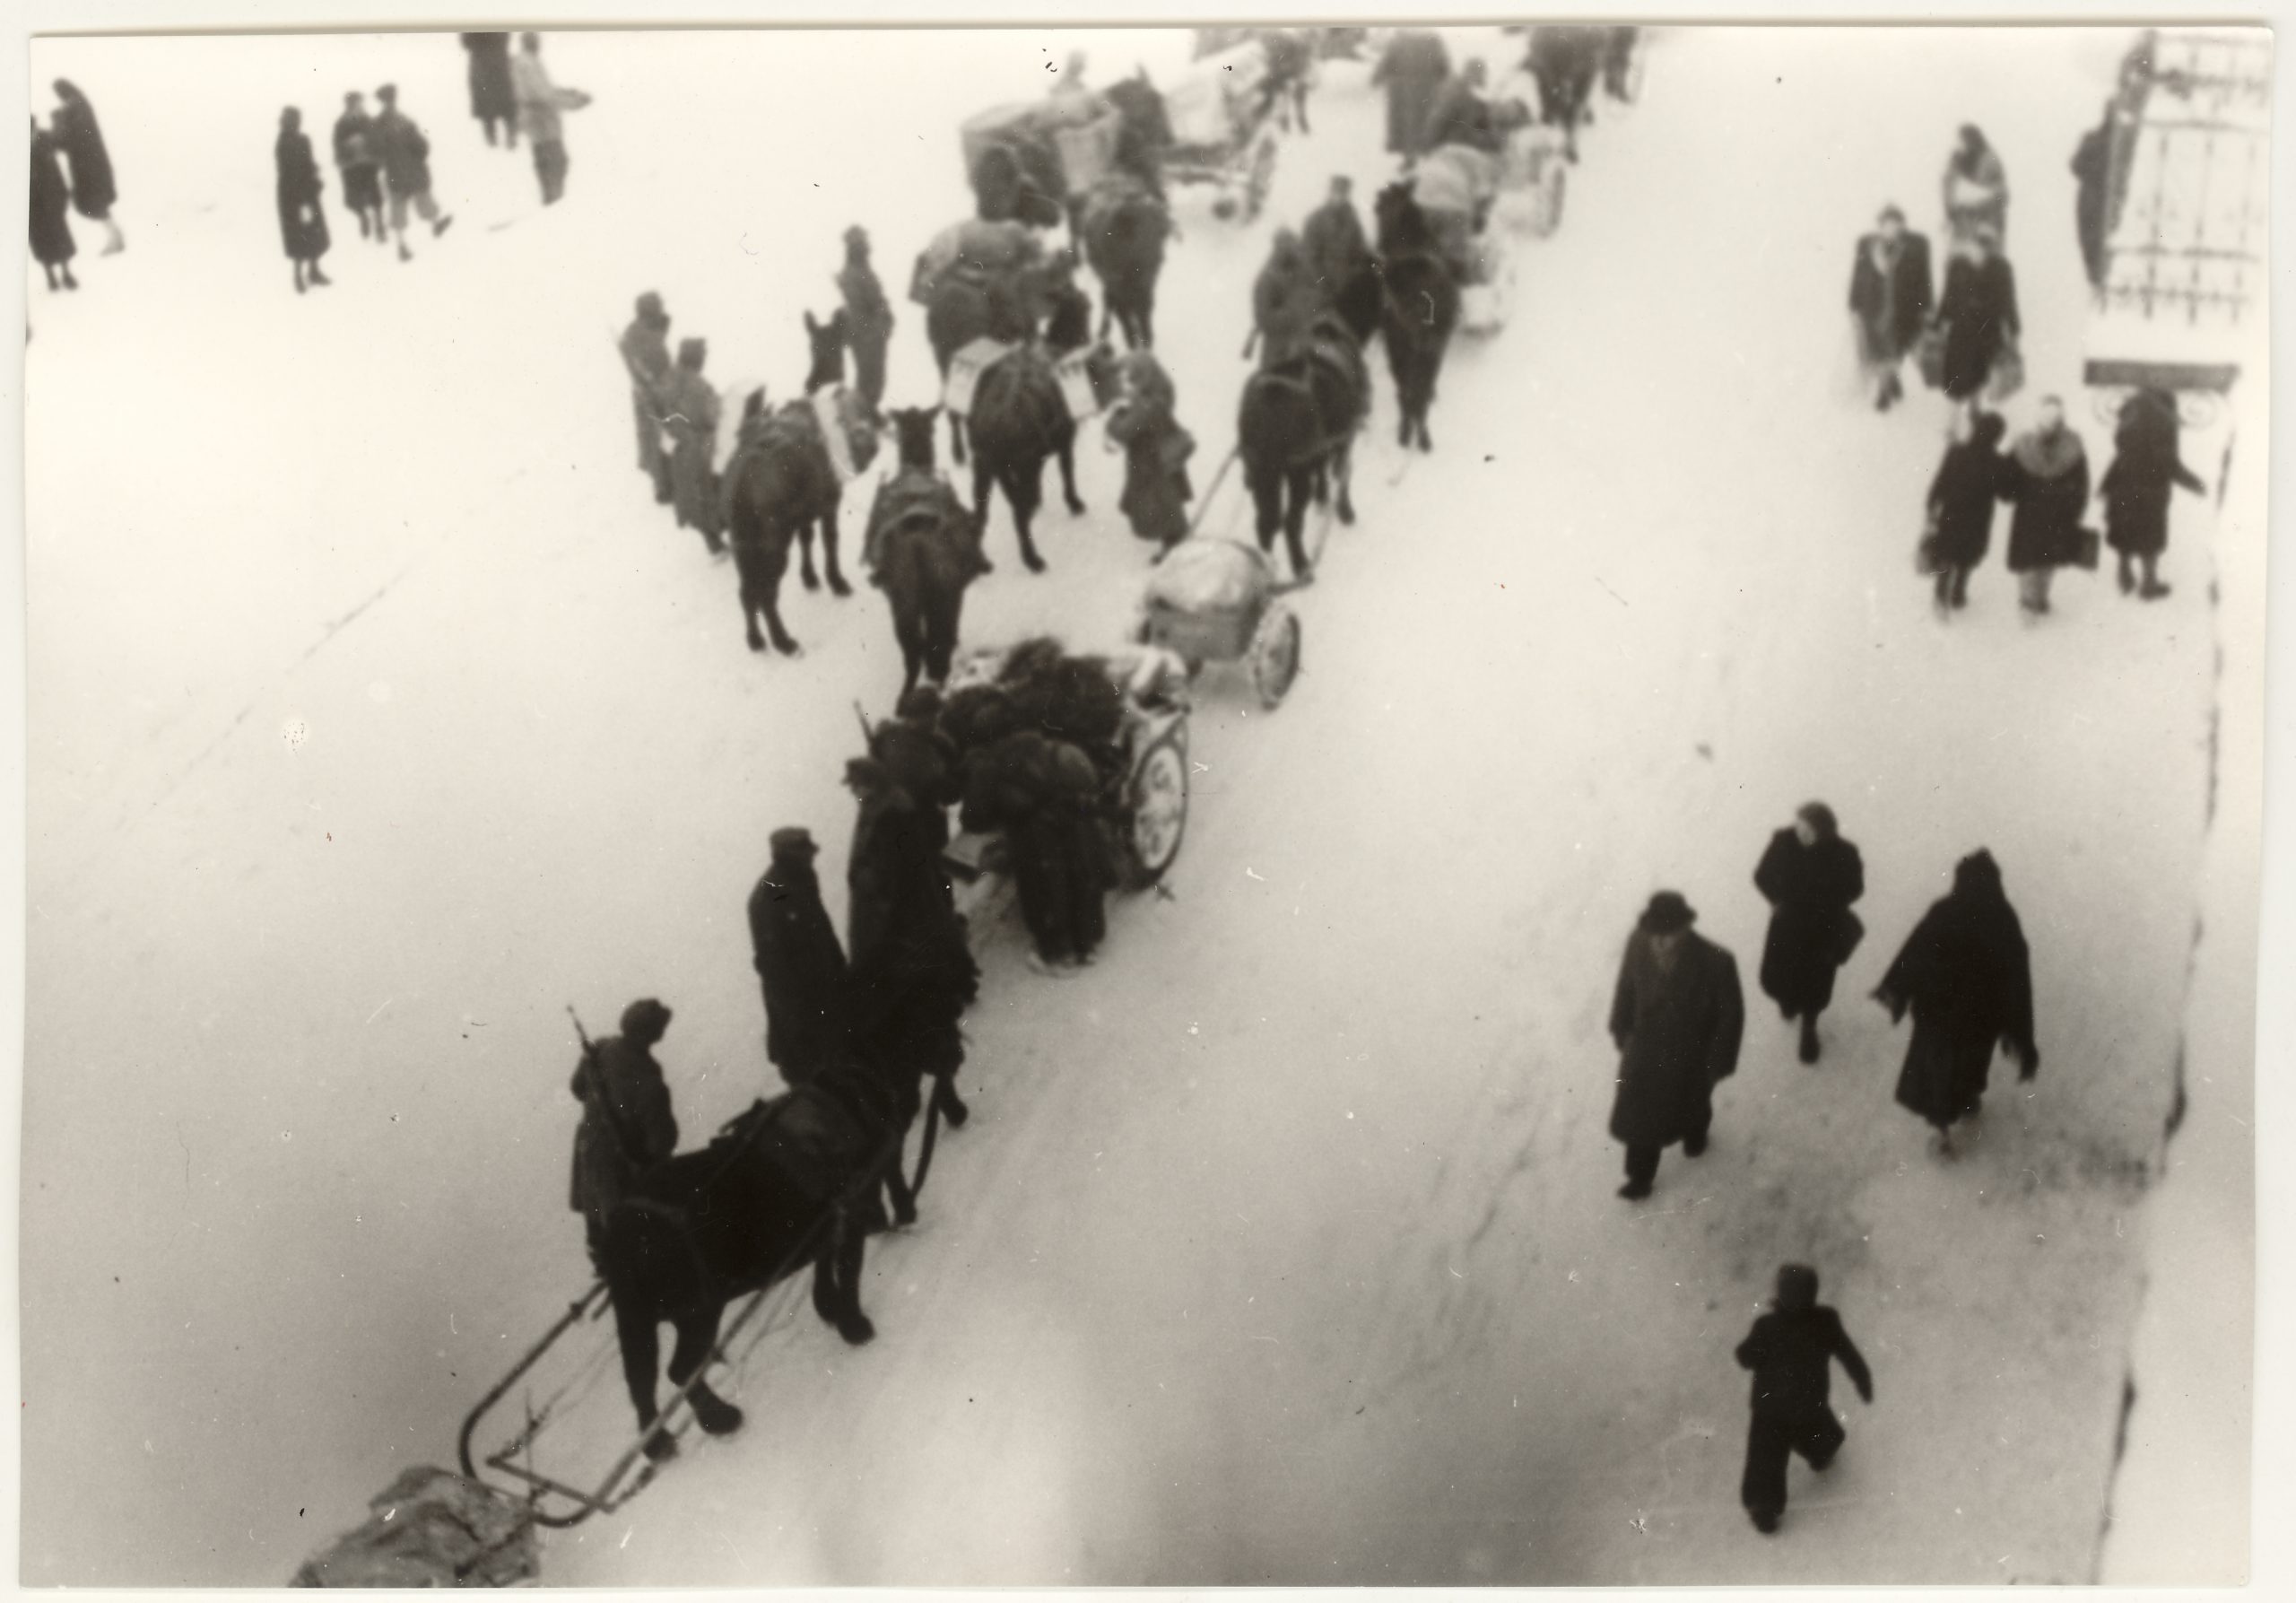 Fotografia czarnobiała przedstawia ludzi spacerujących podczas zimy. Zdjęcie zrobione jest z lotu ptaka